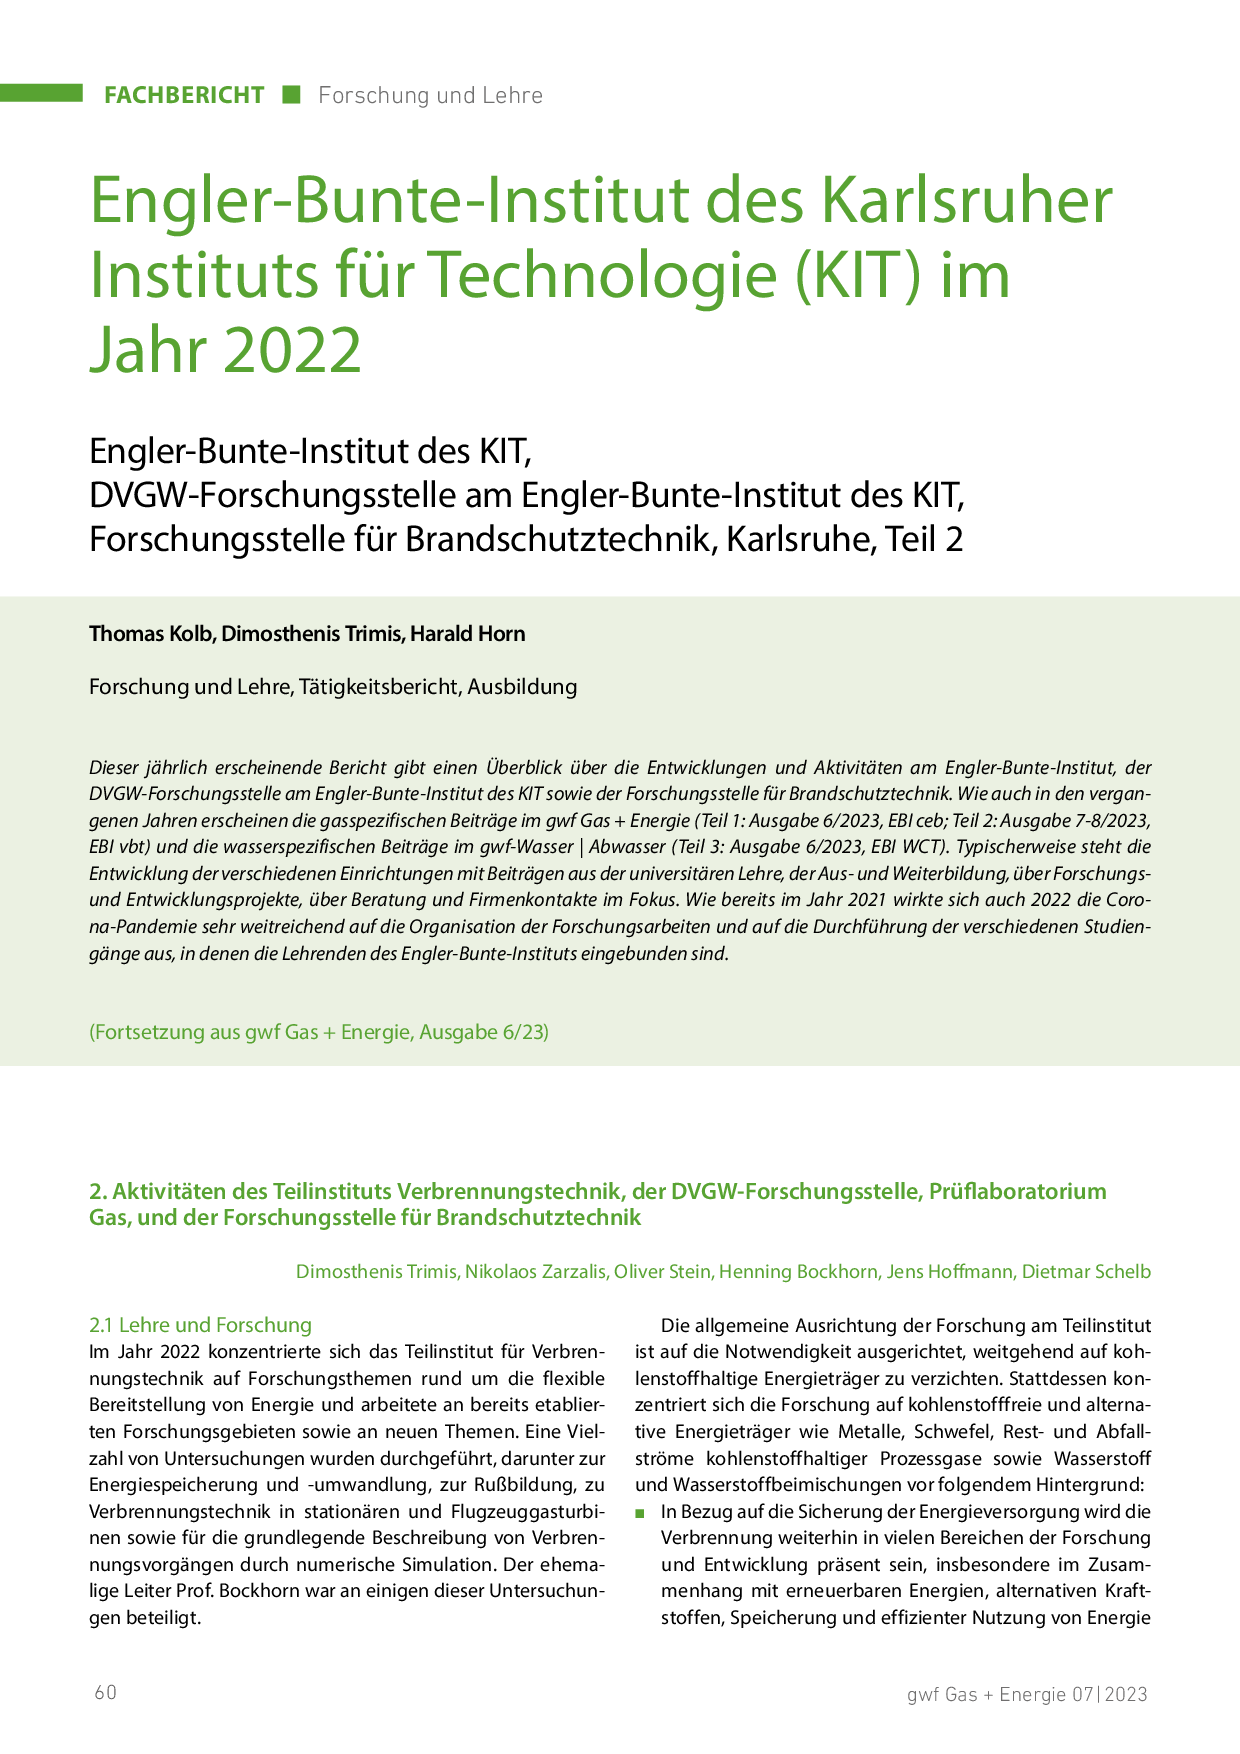 Engler-Bunte-Institut des Karlsruher Instituts für Technologie (KIT) im Jahr 2022